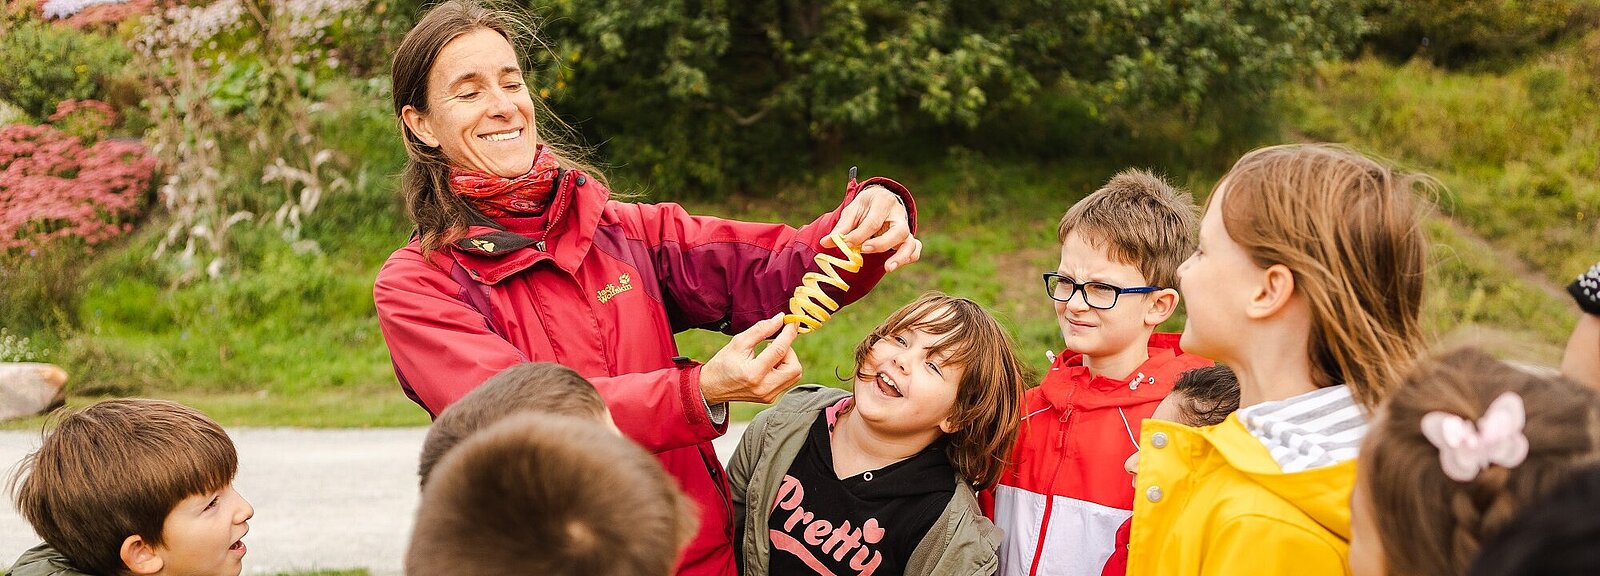 Eine Frau zeigt Kindern eine Apfelschalenspirale